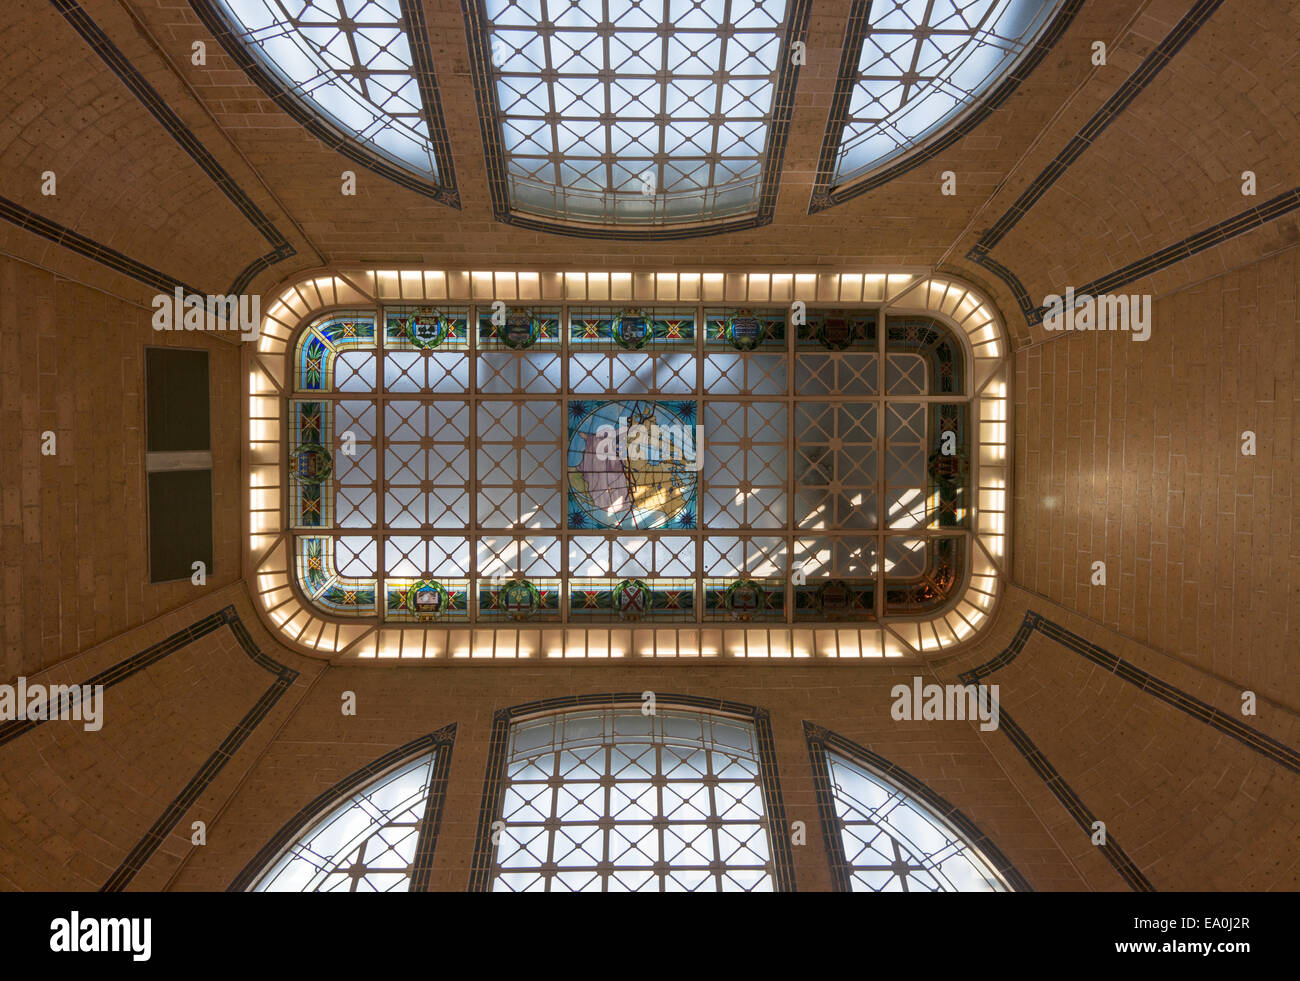 Innenansicht Quebec City-Bahnhof nach oben in Richtung der verzierten Decke in der Lobby, Quebec, Kanada Stockfoto